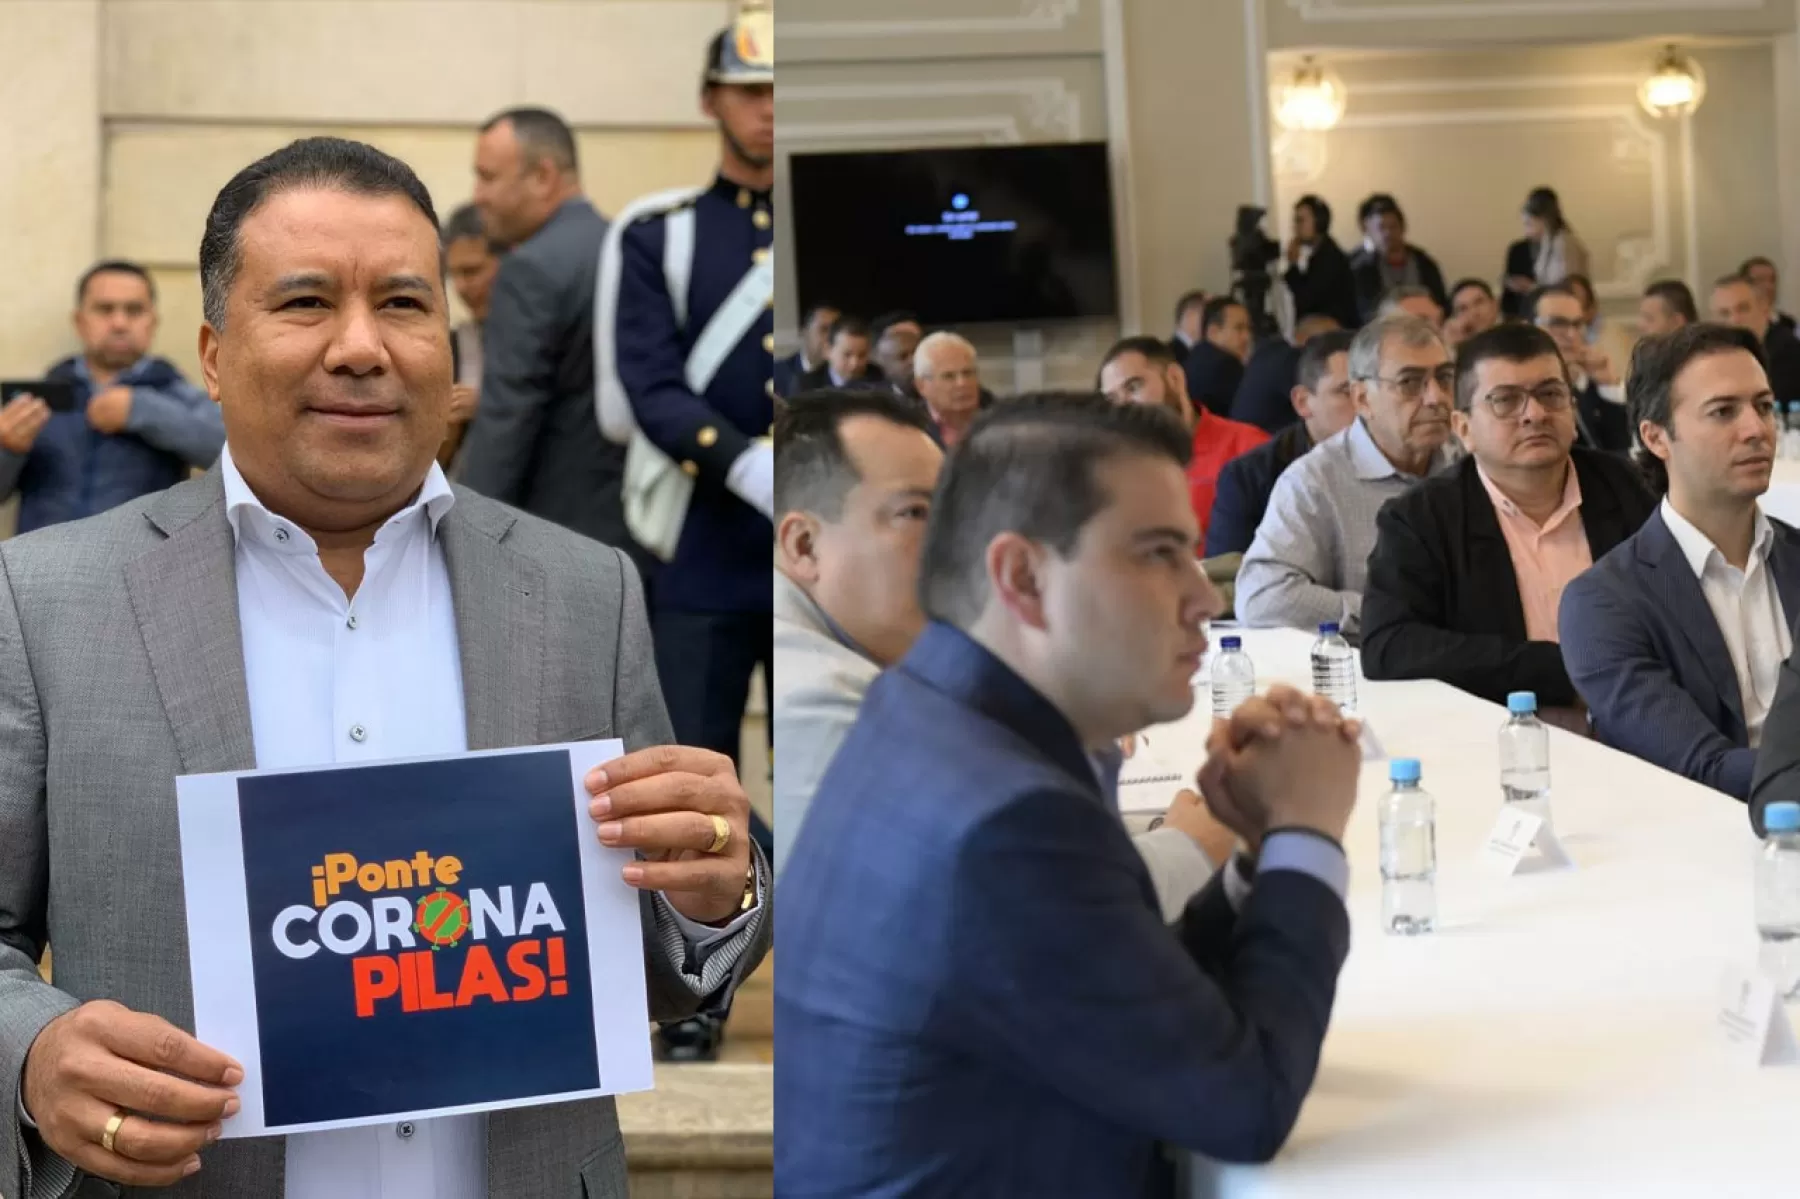 Facundo Castillos Cisneros y Edgar Tovar Pedraza, anunciaron que entraron en cuarenta porque ellos también asistieron a reunión en la Casa de Nariño, donde estuvo presente el alcalde de Popayán quien dio positivo para el coronavirus COVID-19.